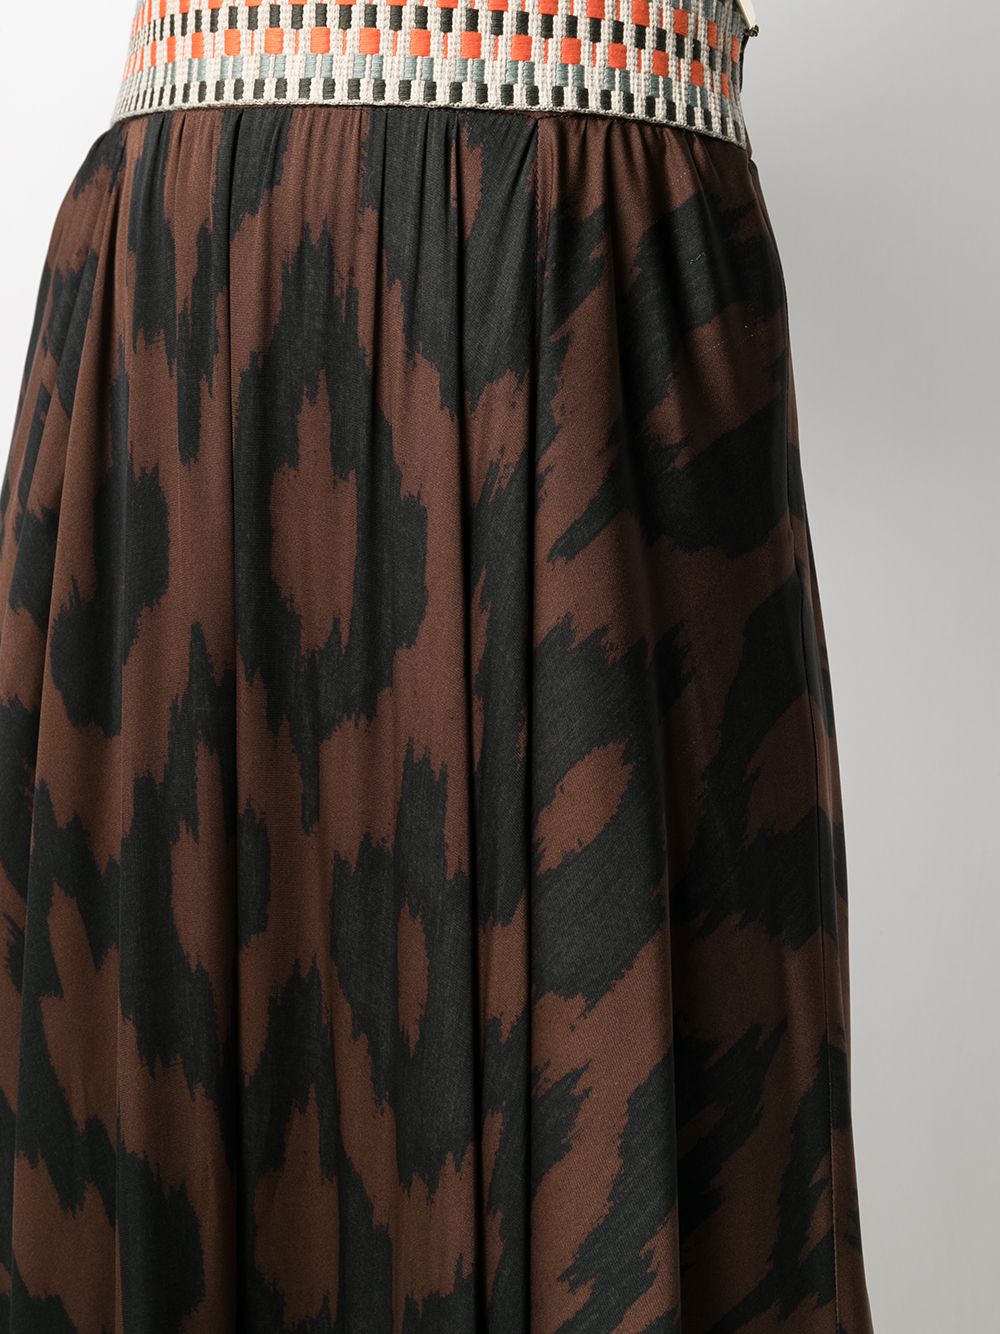 фото Bazar deluxe юбка миди асимметричного кроя с геометричным принтом